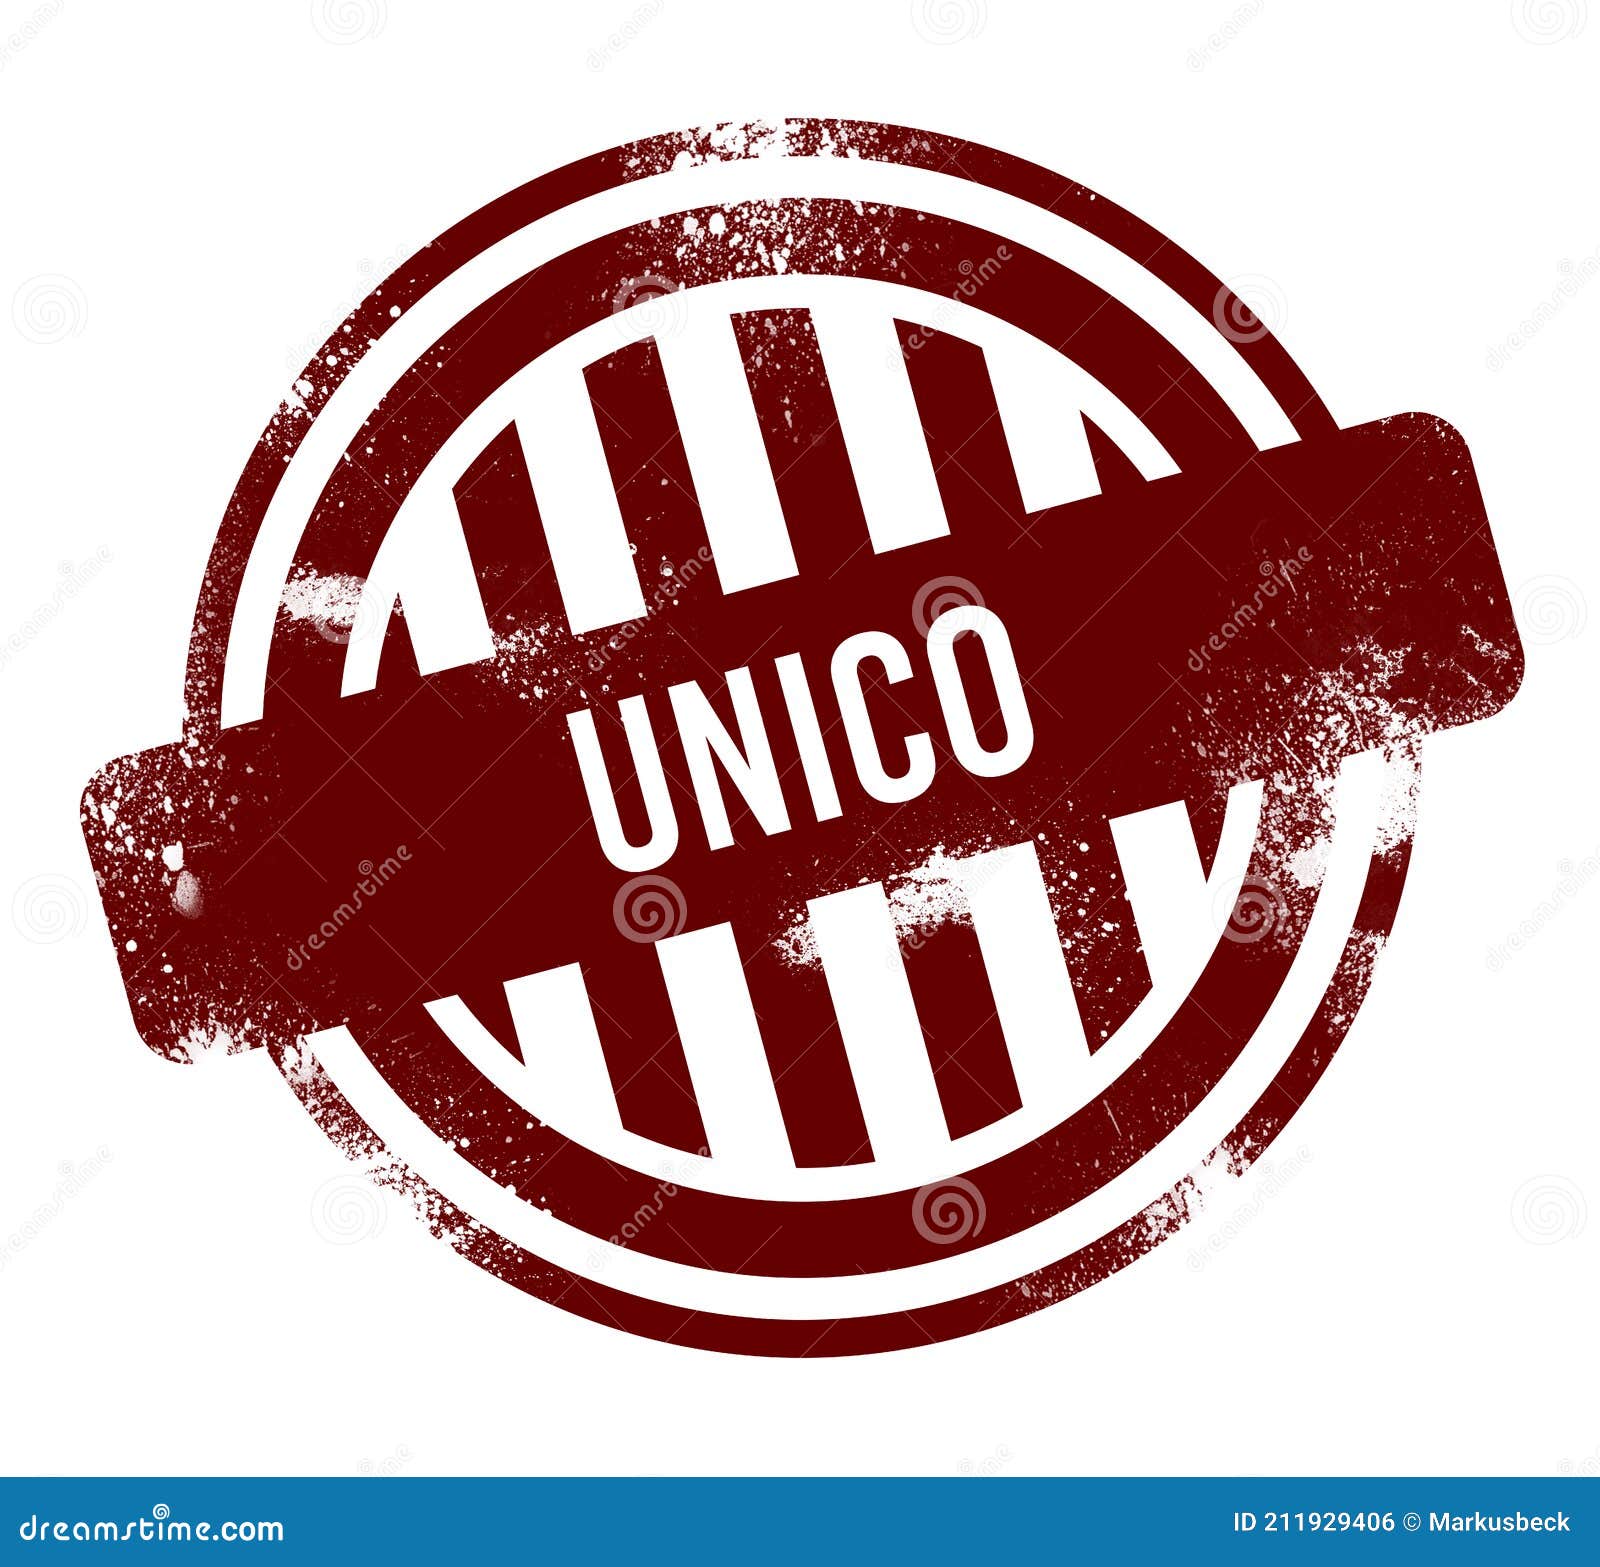 unico - red round grunge button, stamp